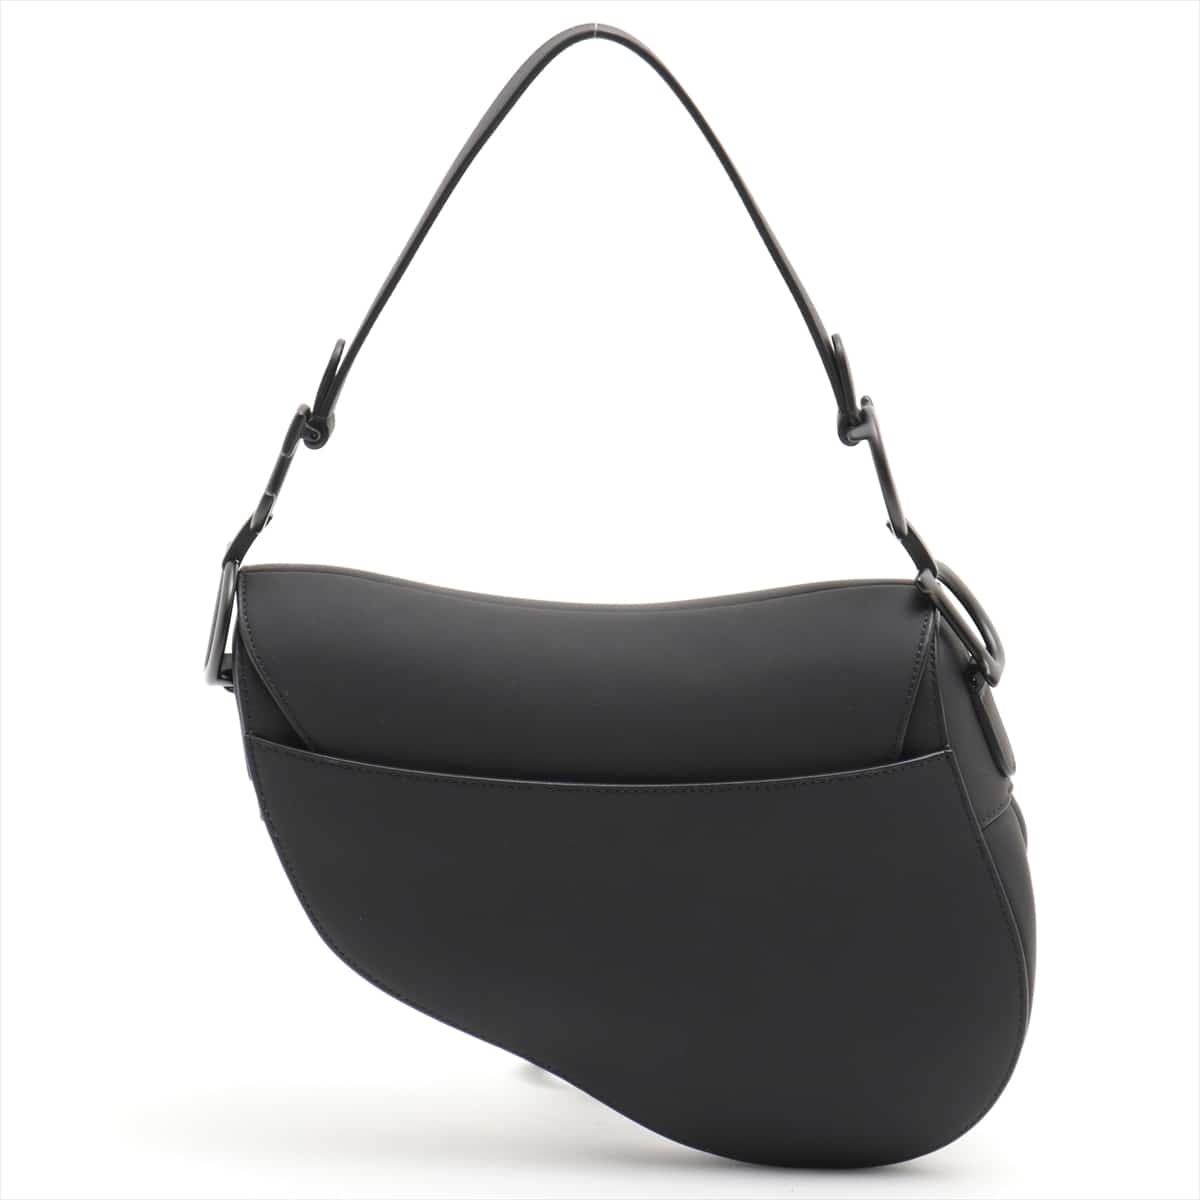 Christian Dior Saddle Bag Leather Shoulder Bag Black | eBay